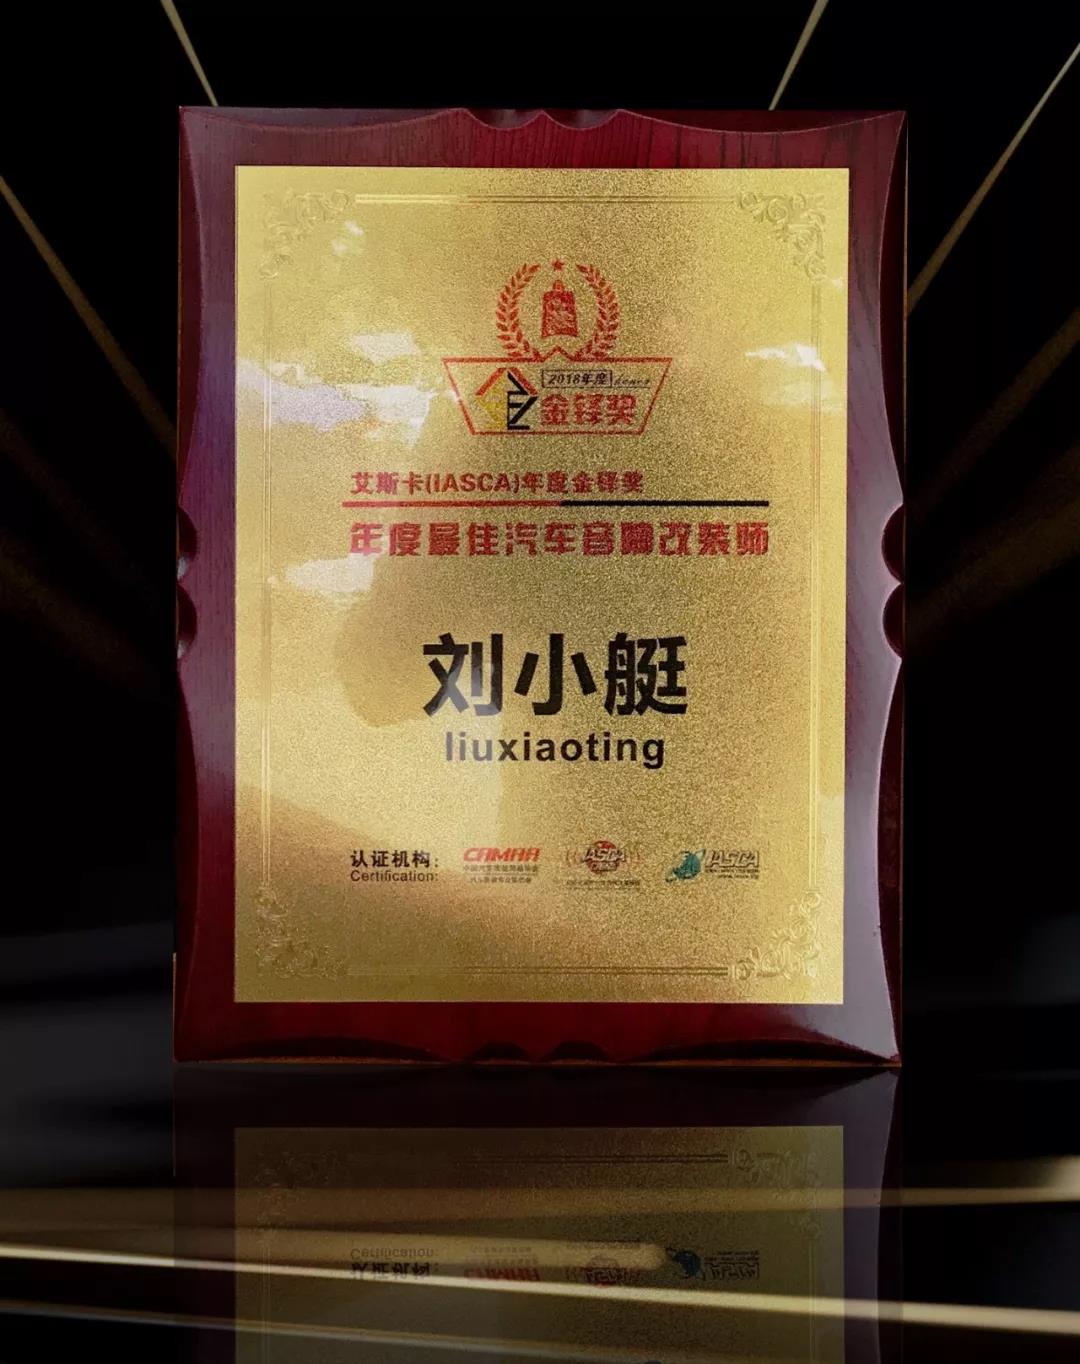 深圳九洲展载誉而归-美托声频旗下实力荣获多项IASCA年度大奖